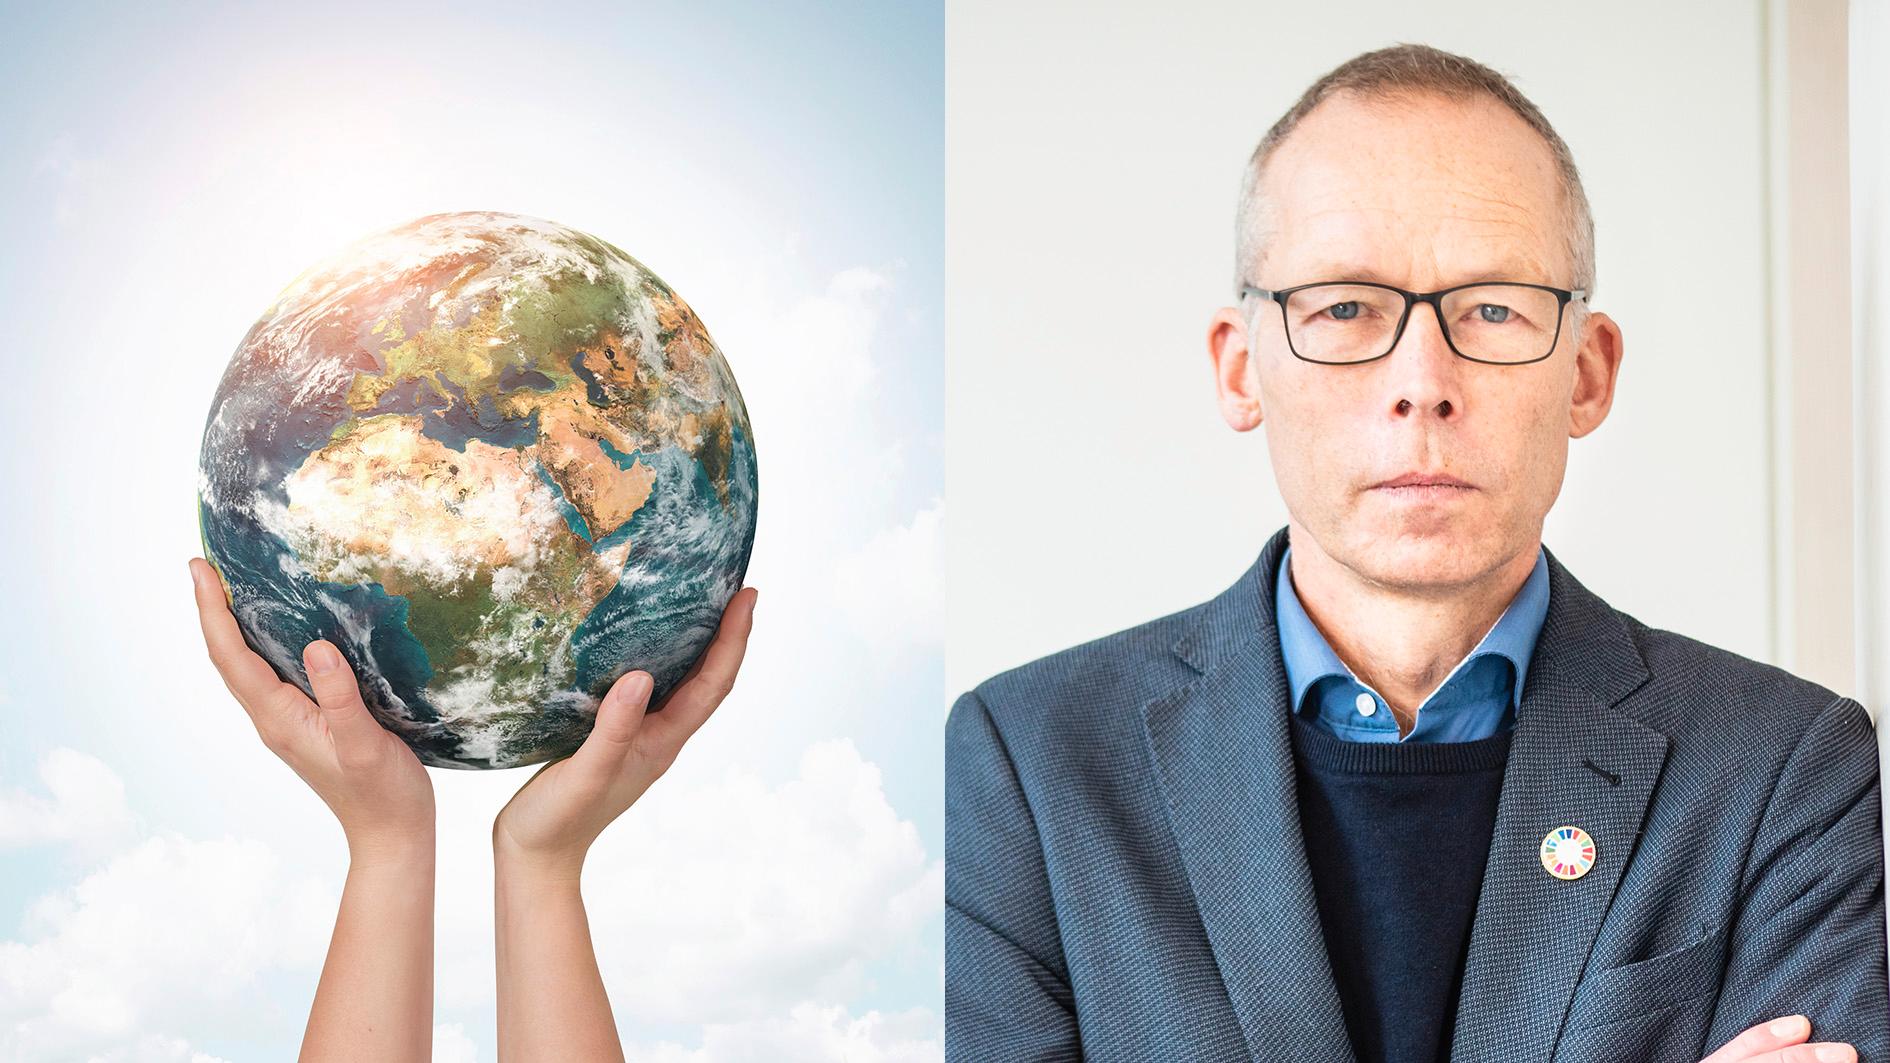 Klimatforskaren Johan Rockström har tillsammans med kollegan Owen Gaffney skrivit ”Jorden – vår planets historia och framtid”. ”Dessa två forskare kan sägas ha transcenderat – från enbart forskare till intellektuella, beslutna att spela en roll i vår tids ödesfråga” skriver Kajsa Ekis Ekman.